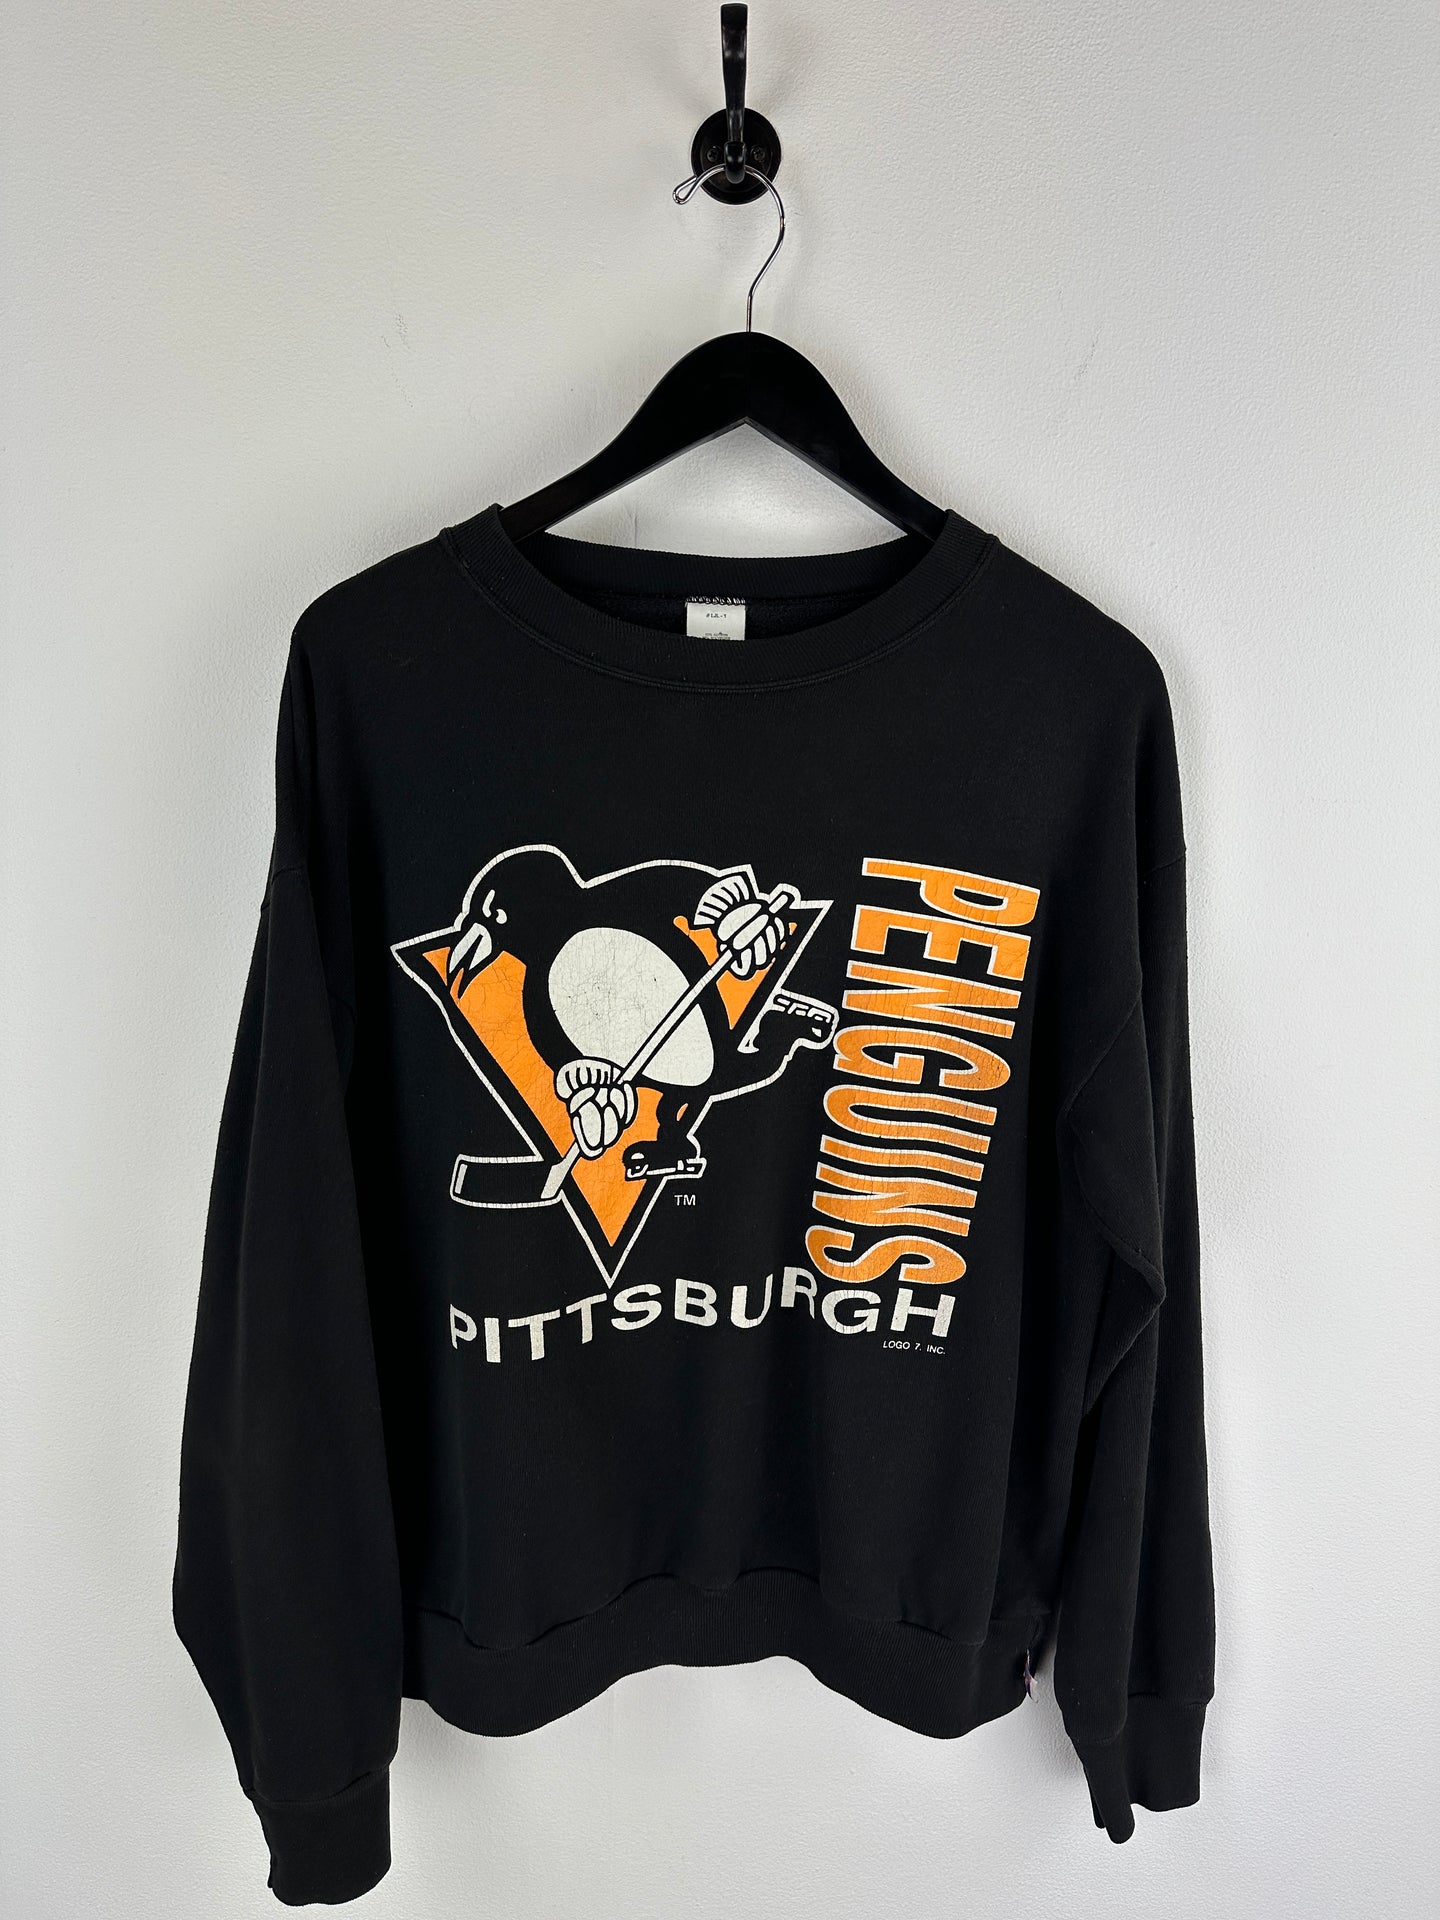 Vintage Penguins Sweatshirt (M)